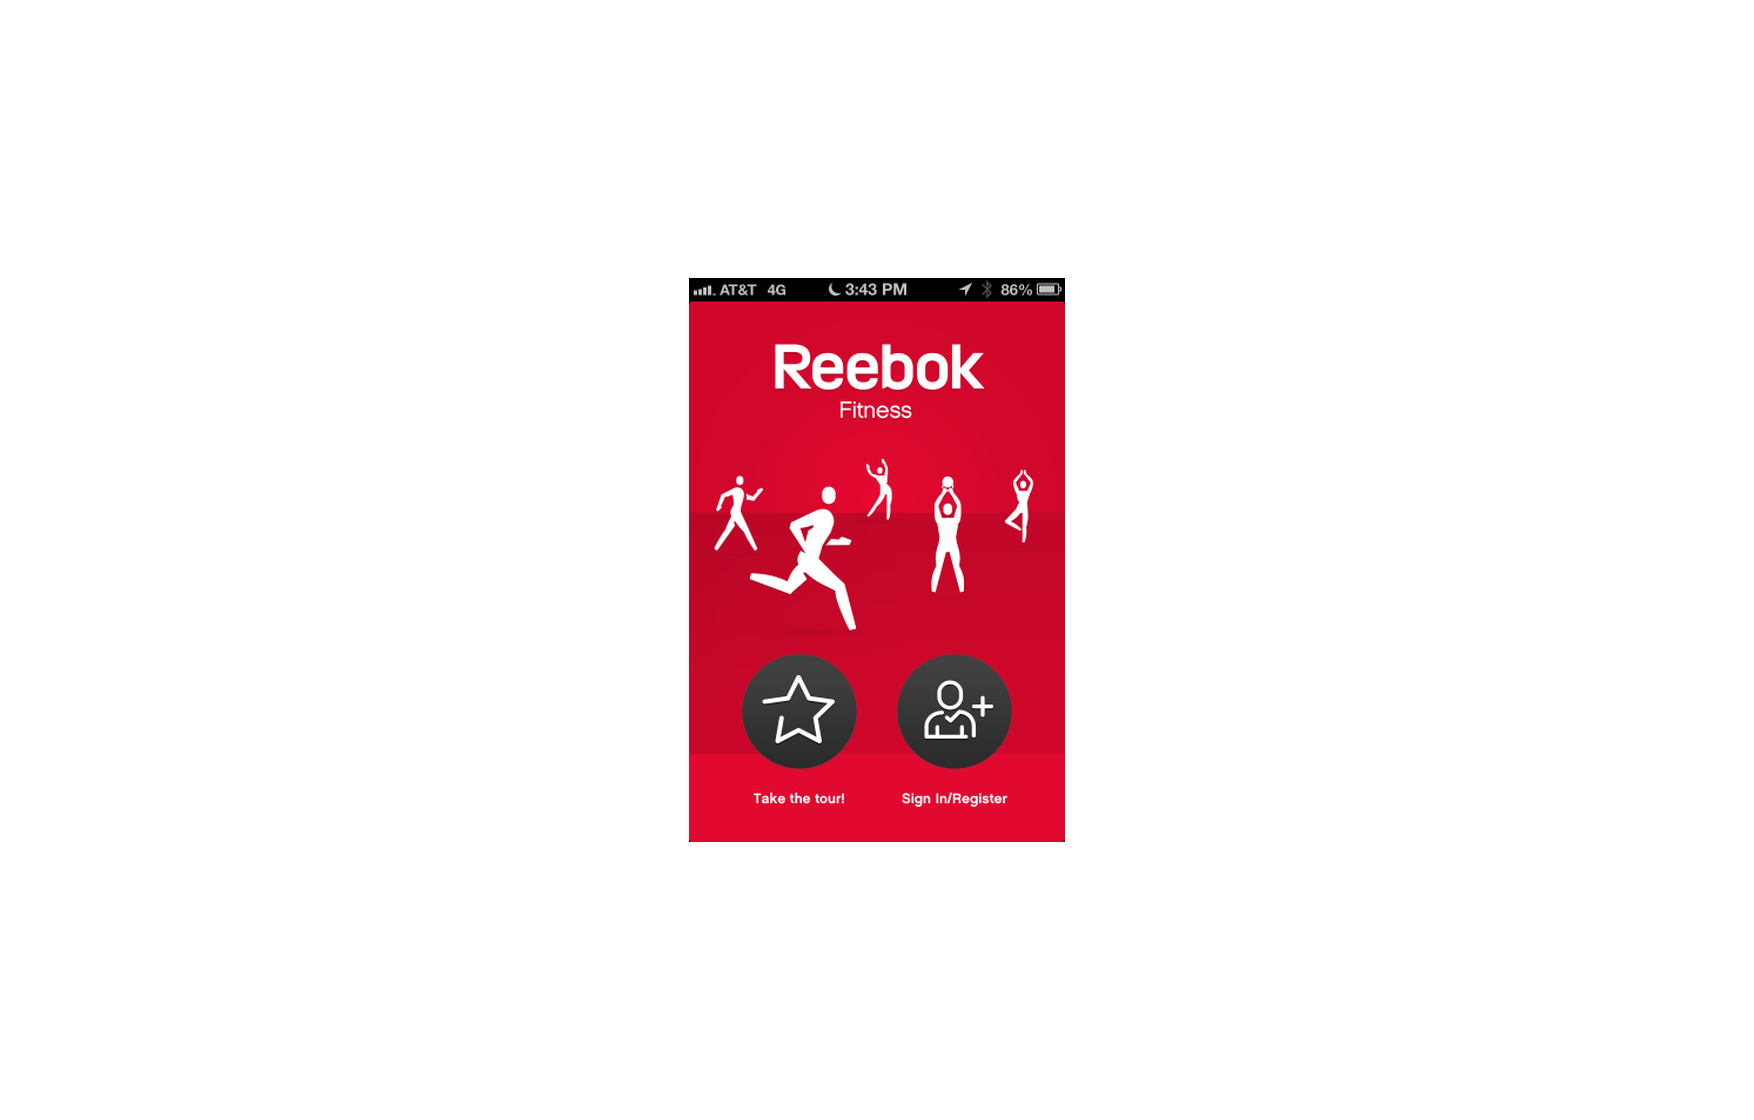 Reebok Fitness - The FWA